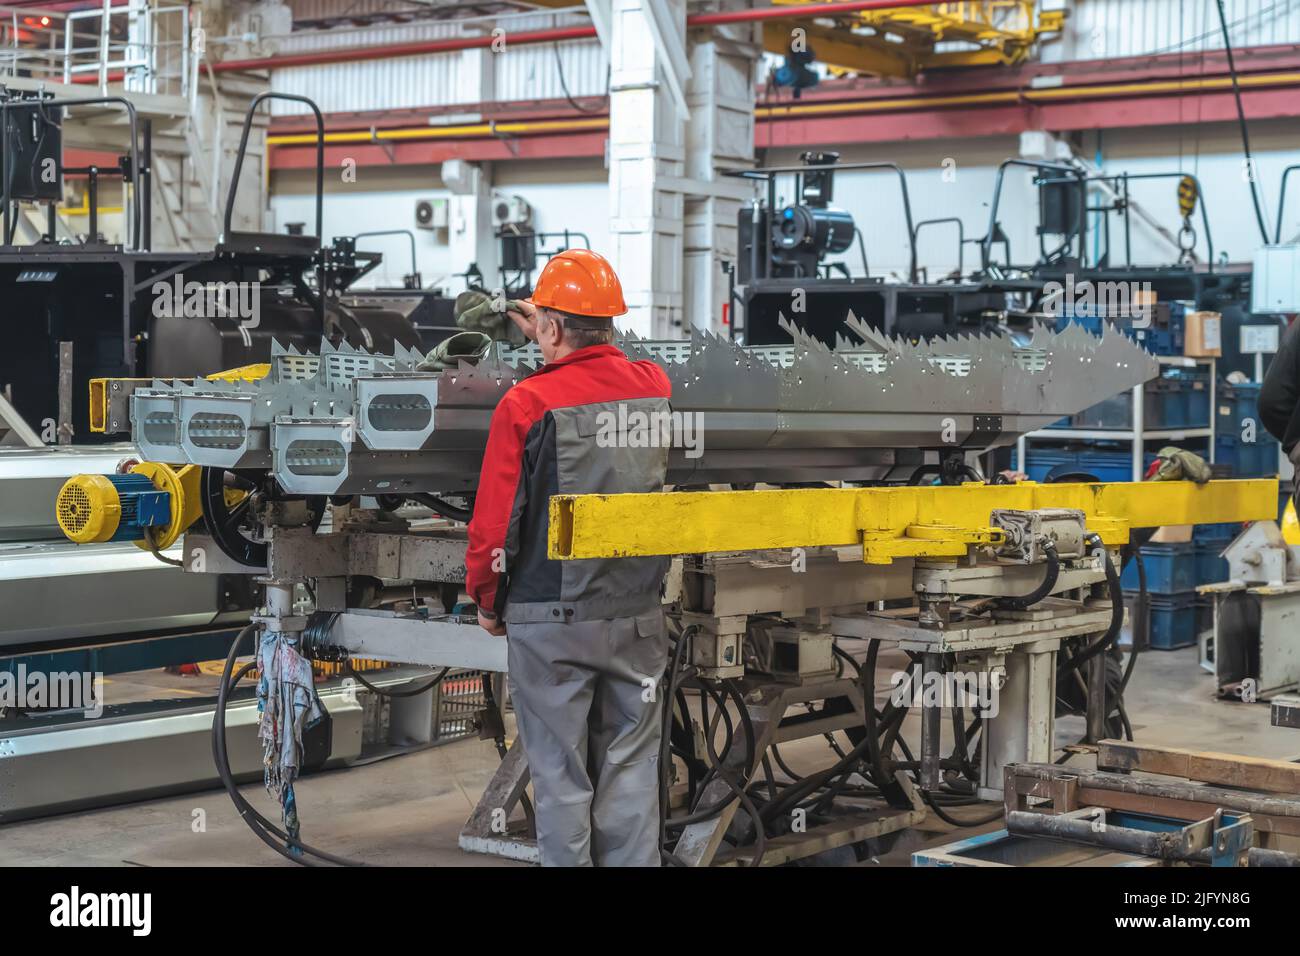 Travailleur en cours de montage de composants pour la production de moissonneuses-batteuses ou de tracteurs sur la chaîne de production industrielle. Banque D'Images